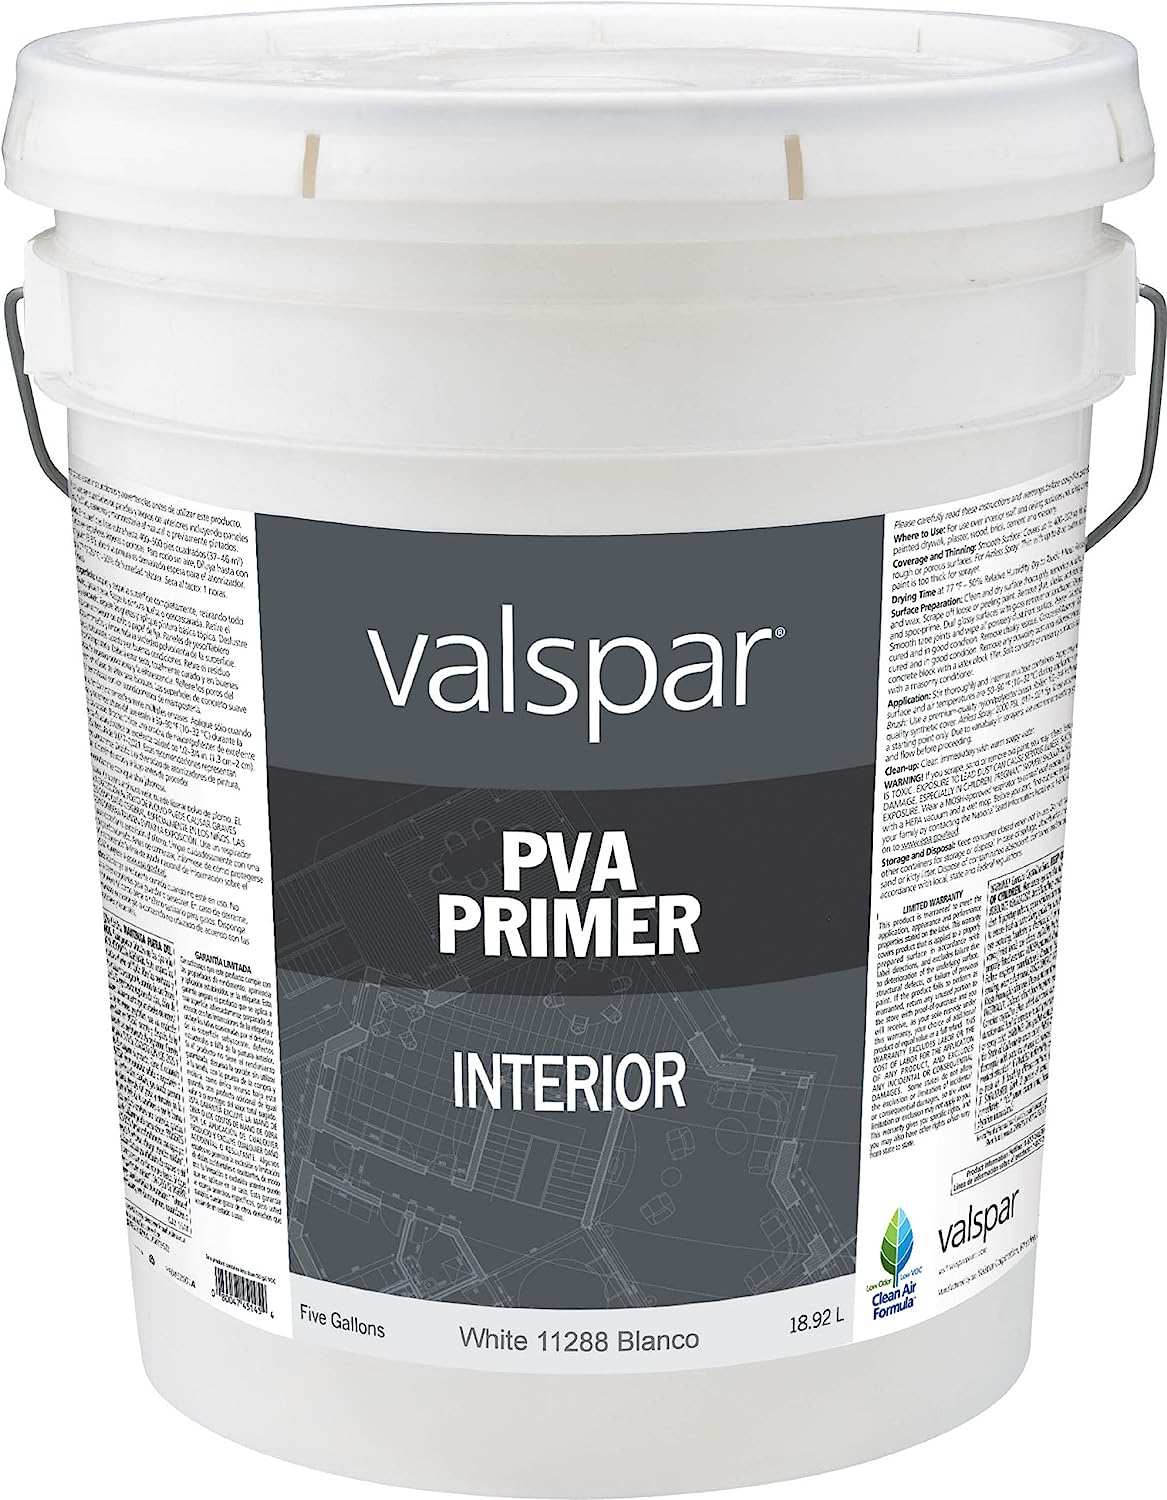 Valspar 11288 Interior PVA Wall Primer, 5-Gallon